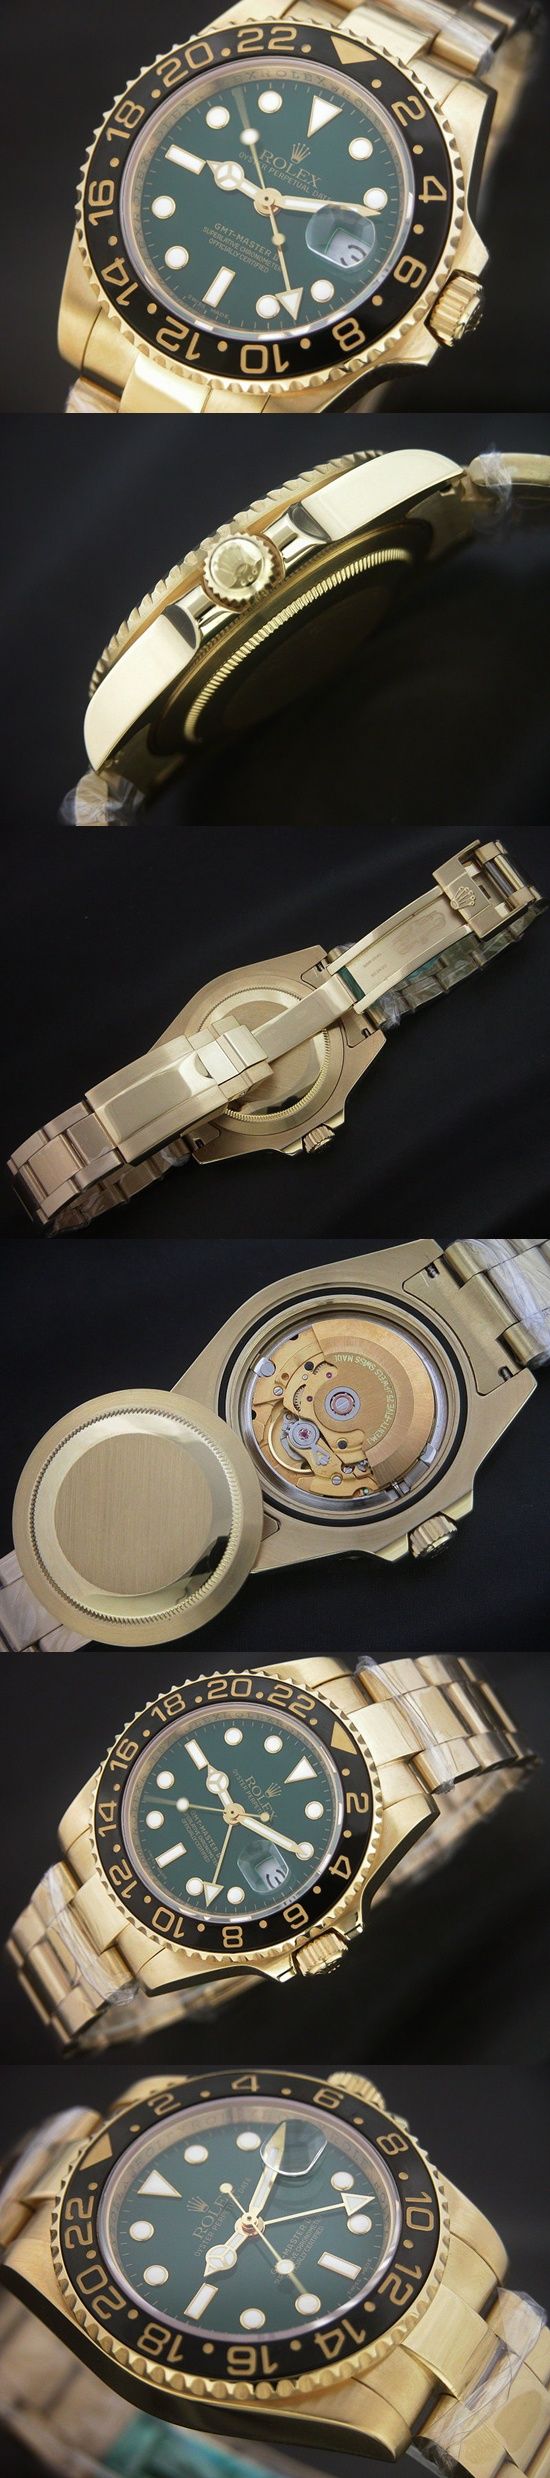 おしゃれなブランド時計がロレックス-GMTマスターII-ROLEX-116718-1-男性用-JPを提供します.